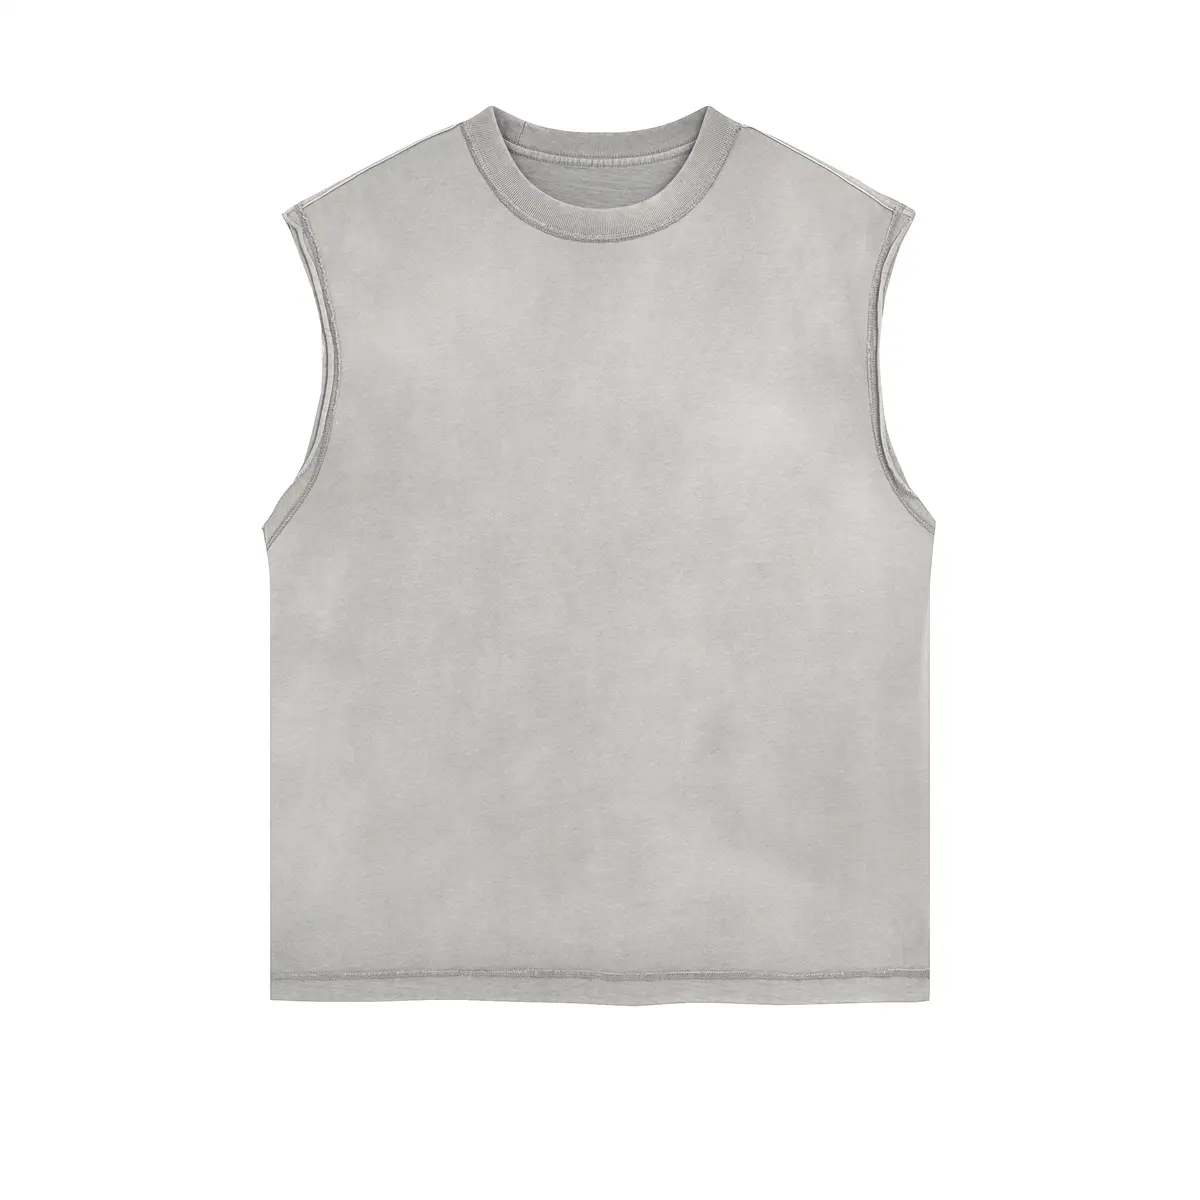 Camiseta de algodón para correr con logotipo personalizado al por mayor, camisetas de atletismo muscular, ropa deportiva sin mangas para entrenamiento, camiseta sin mangas para gimnasio para hombre